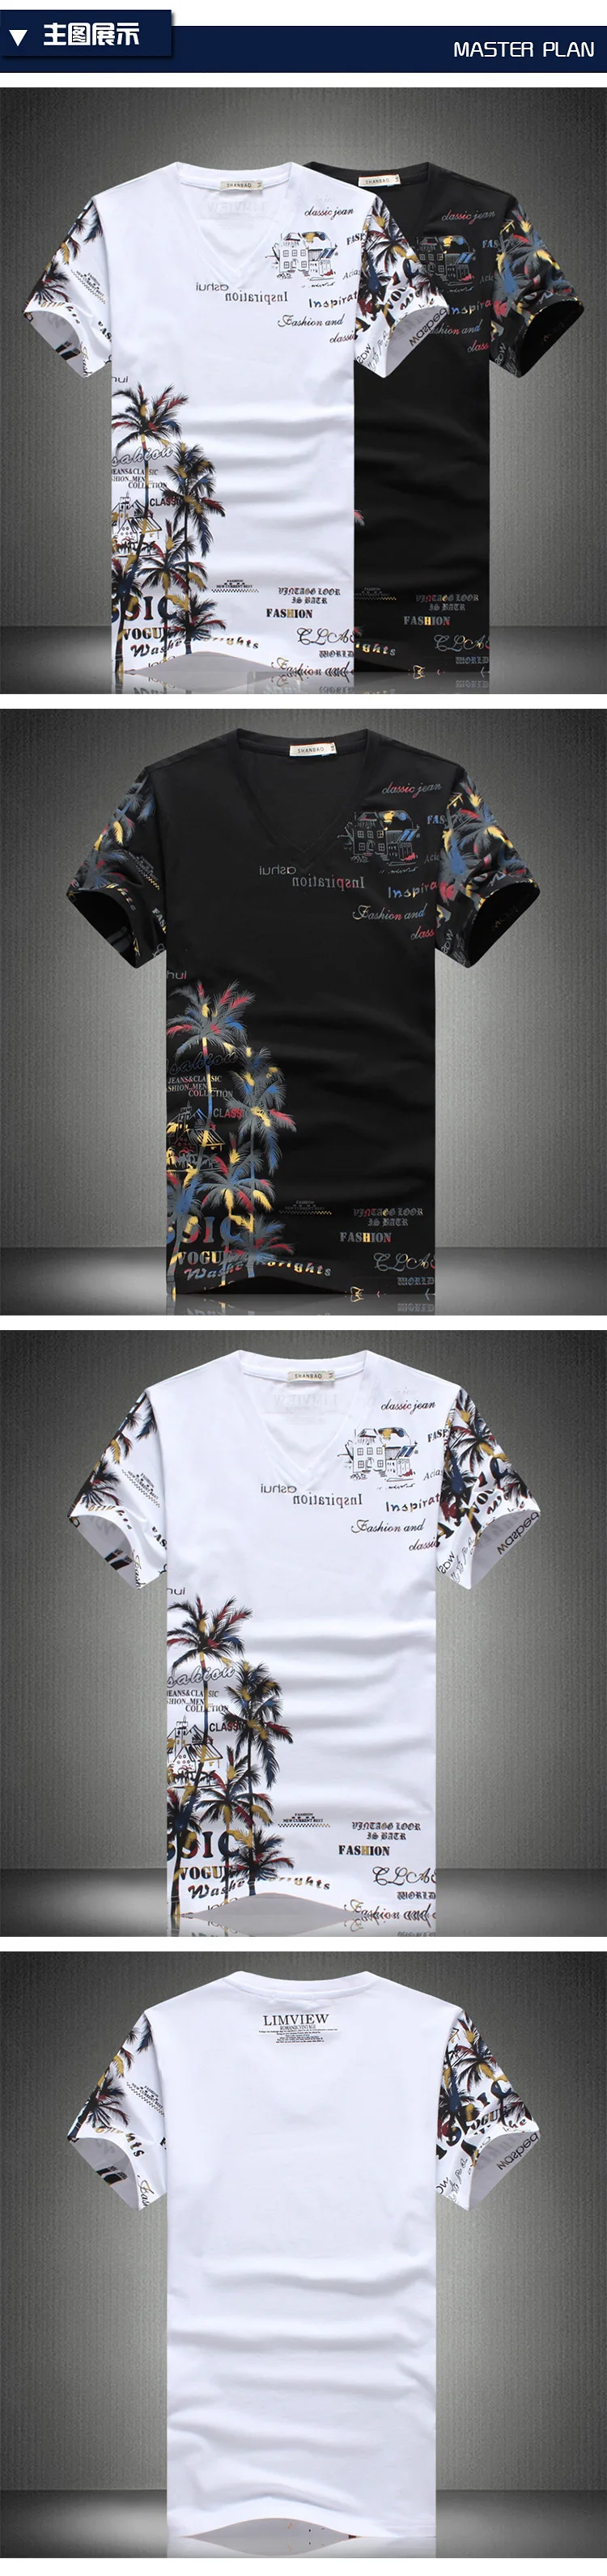 2018 новые модные летние шорты комплекты Для мужчин Повседневное кокосовый остров костюмы для печати Для мужчин китайский Стиль костюм